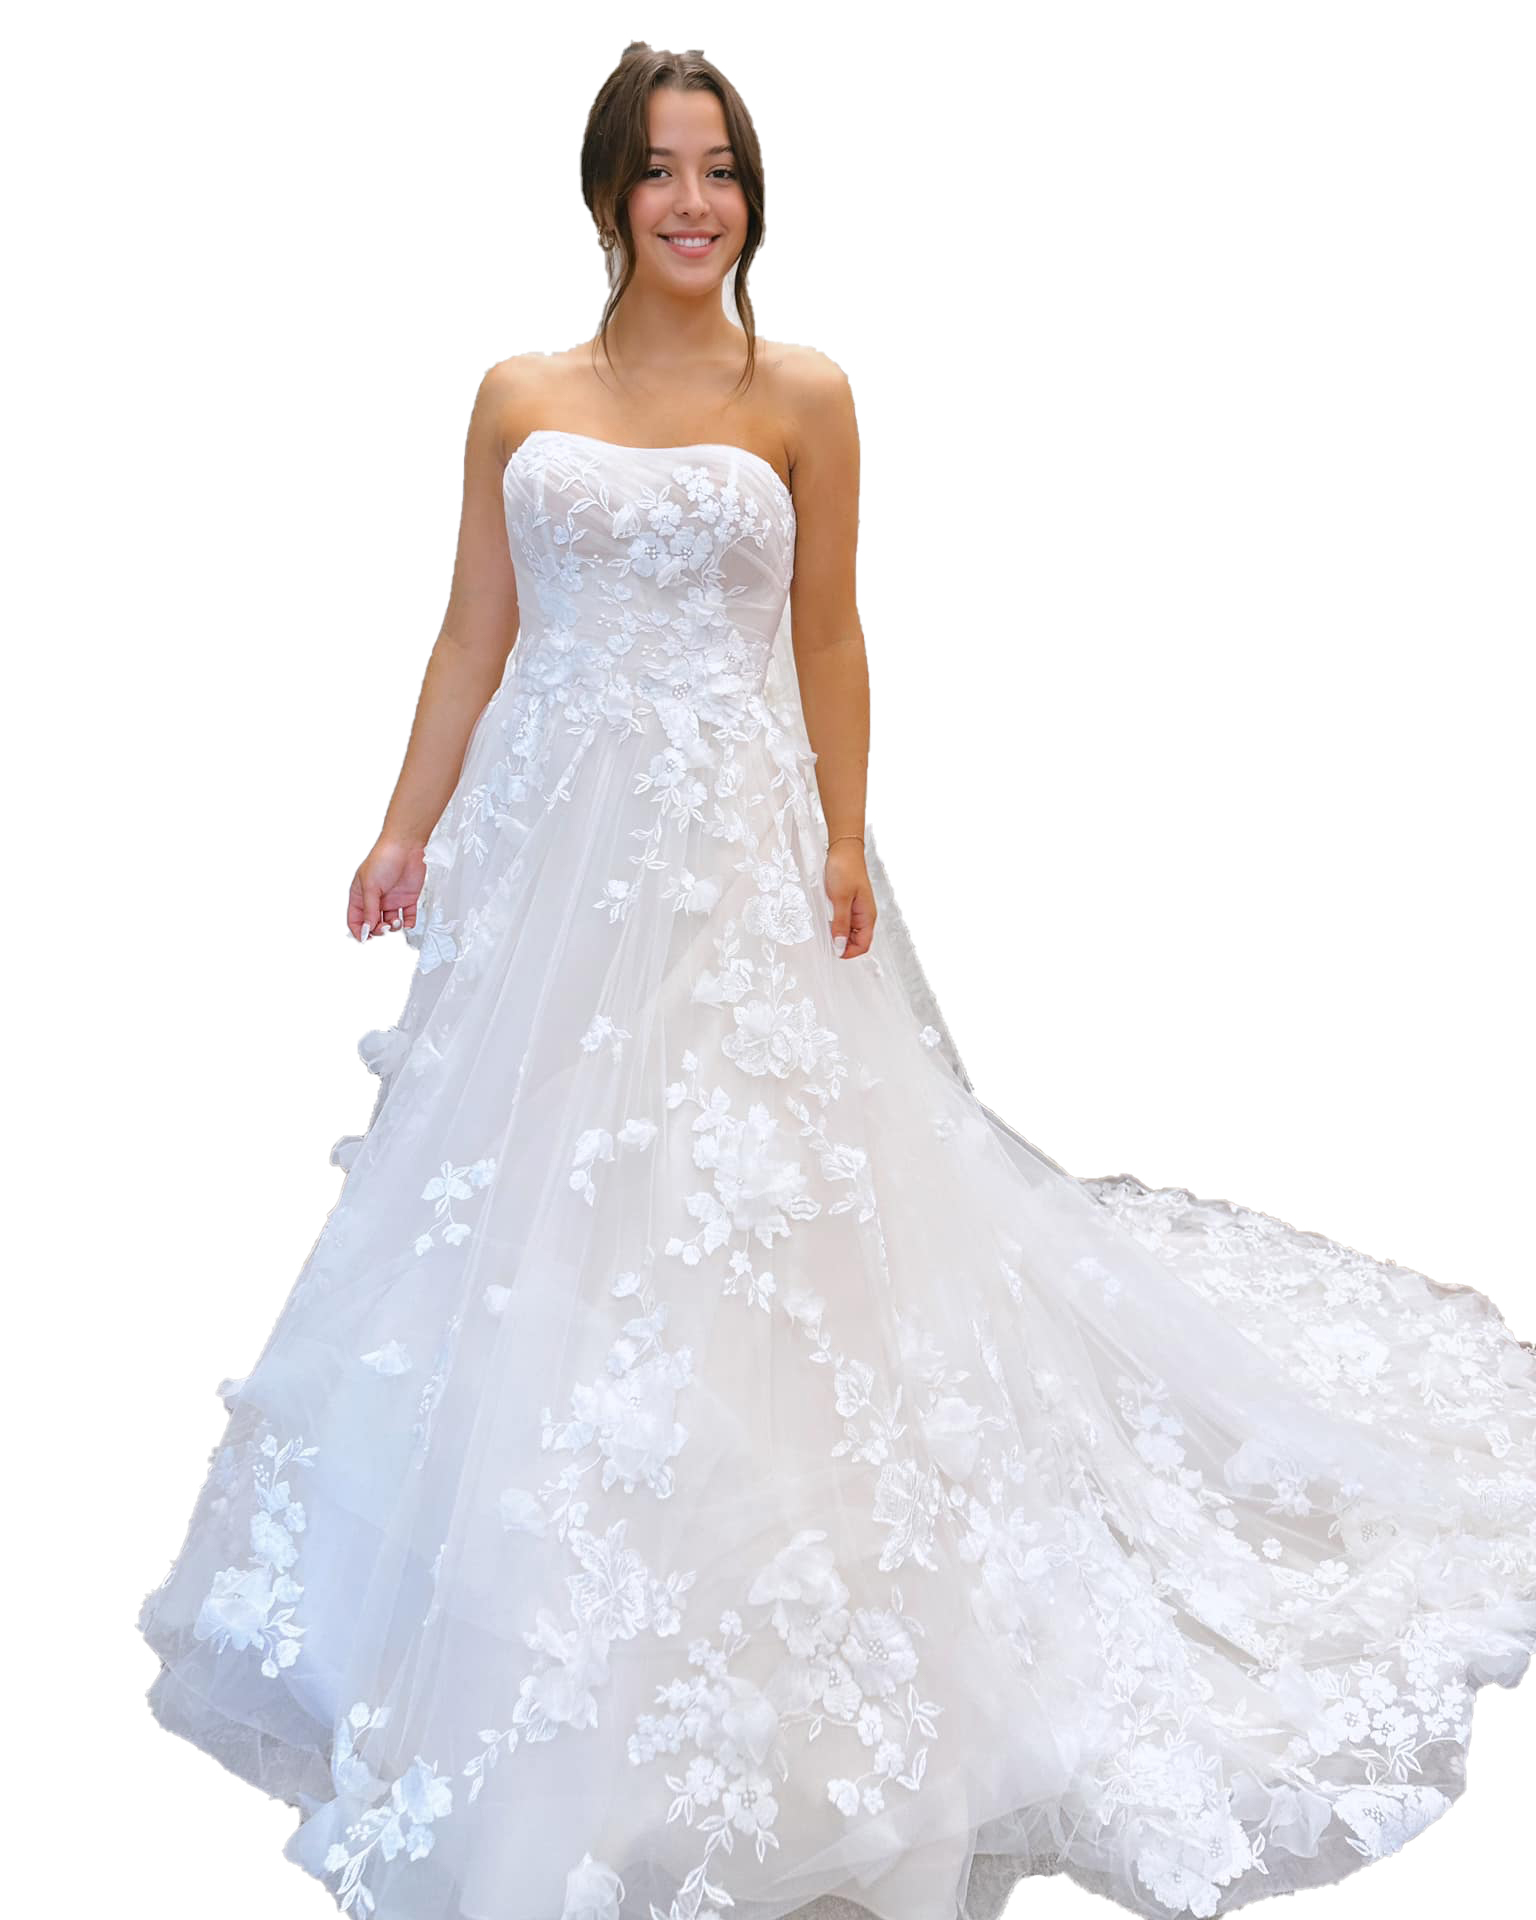 3D Floral Wedding Dress 2024 Strapless Lace Bohemian Bridal Ceremony Rehearsal Reception Engagement Party Night Dance Gown Romantic vestidos de novia Chapel Train